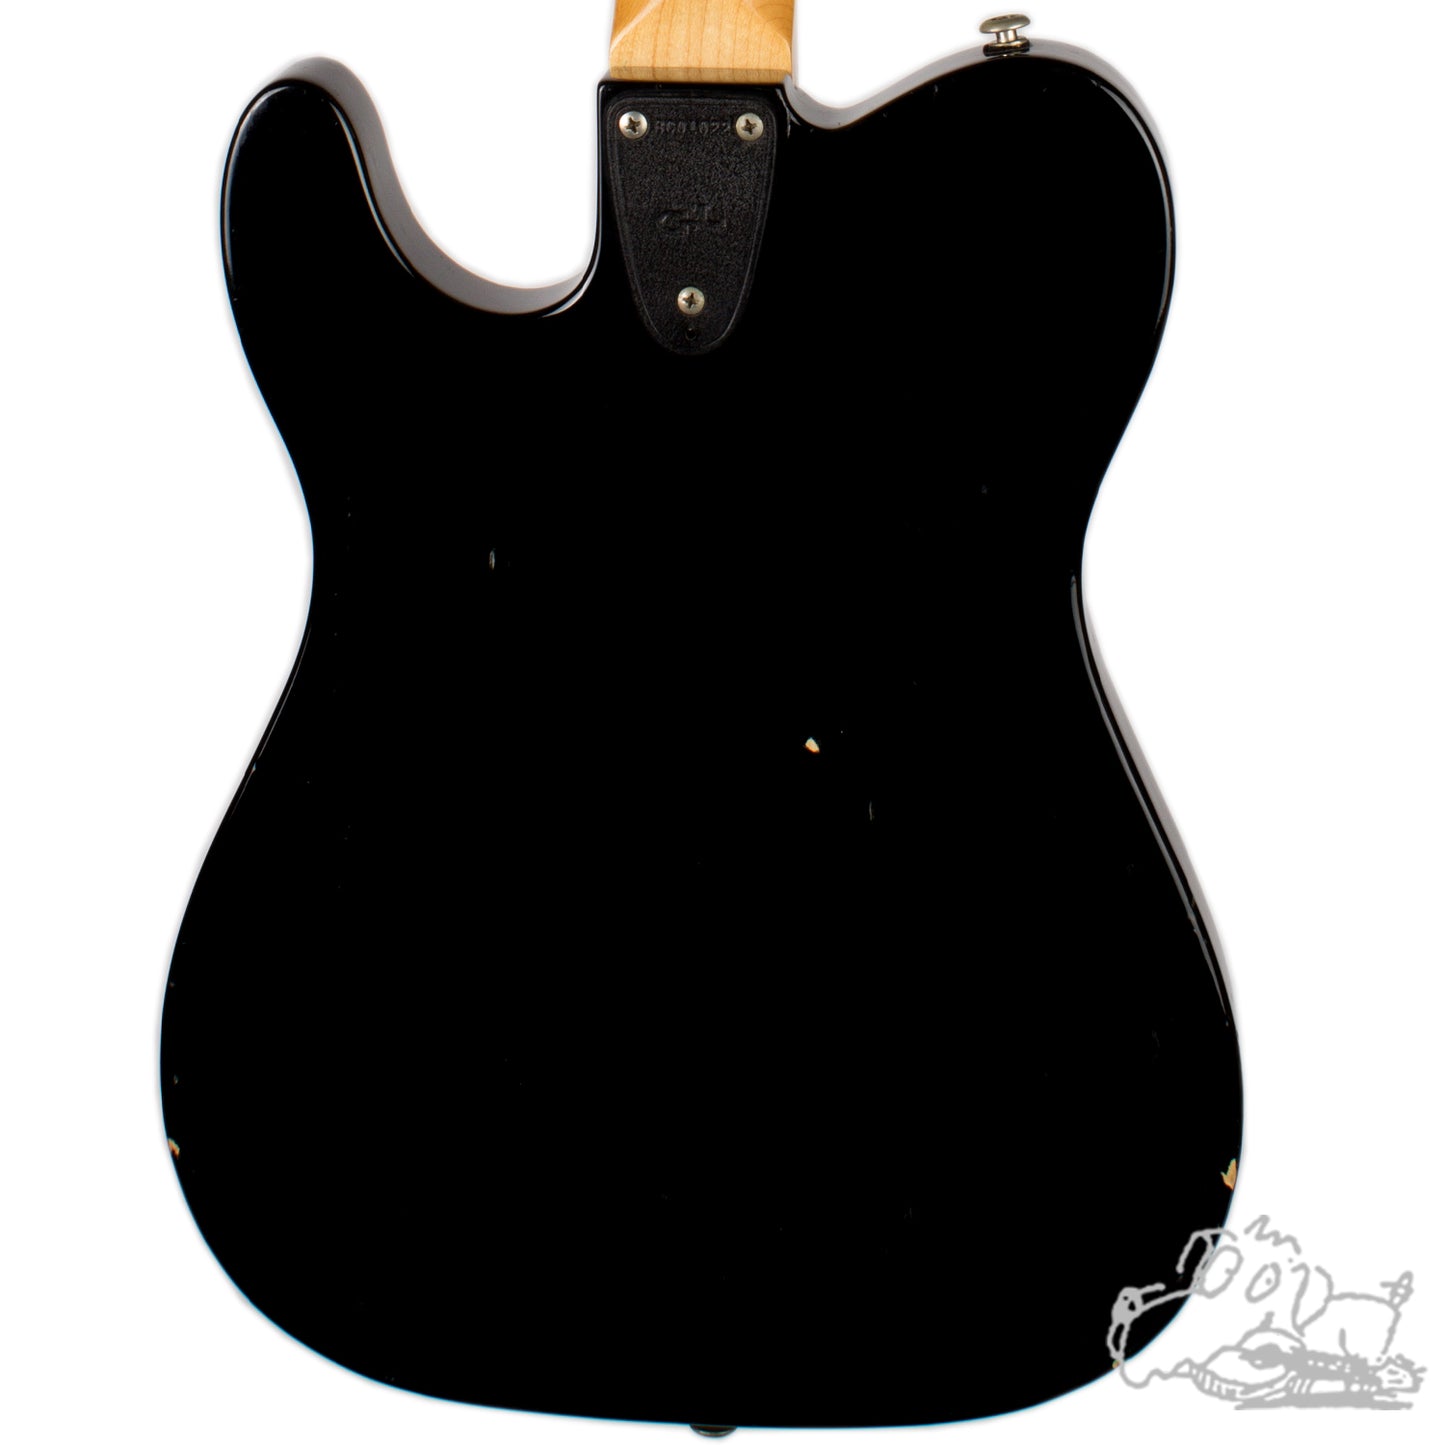 1986 G&L Broadcaster Black - Signed by Leo Fender